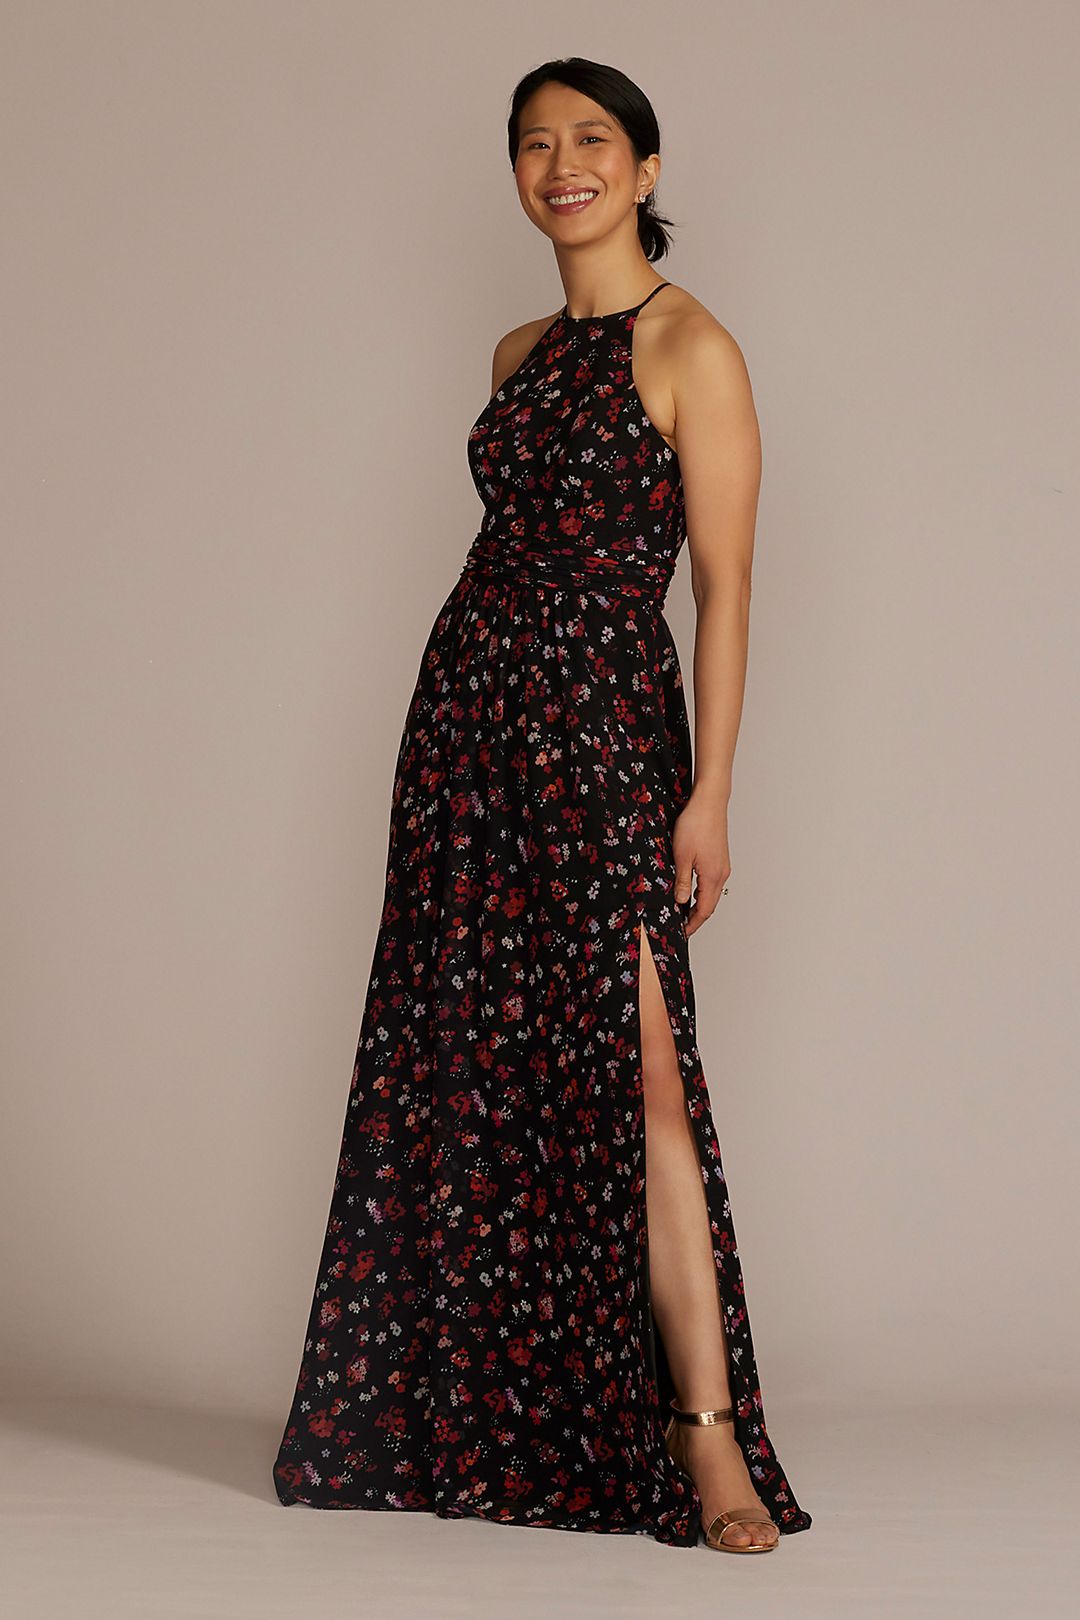 Floral Print Halter A-Line Dress with Slit Image